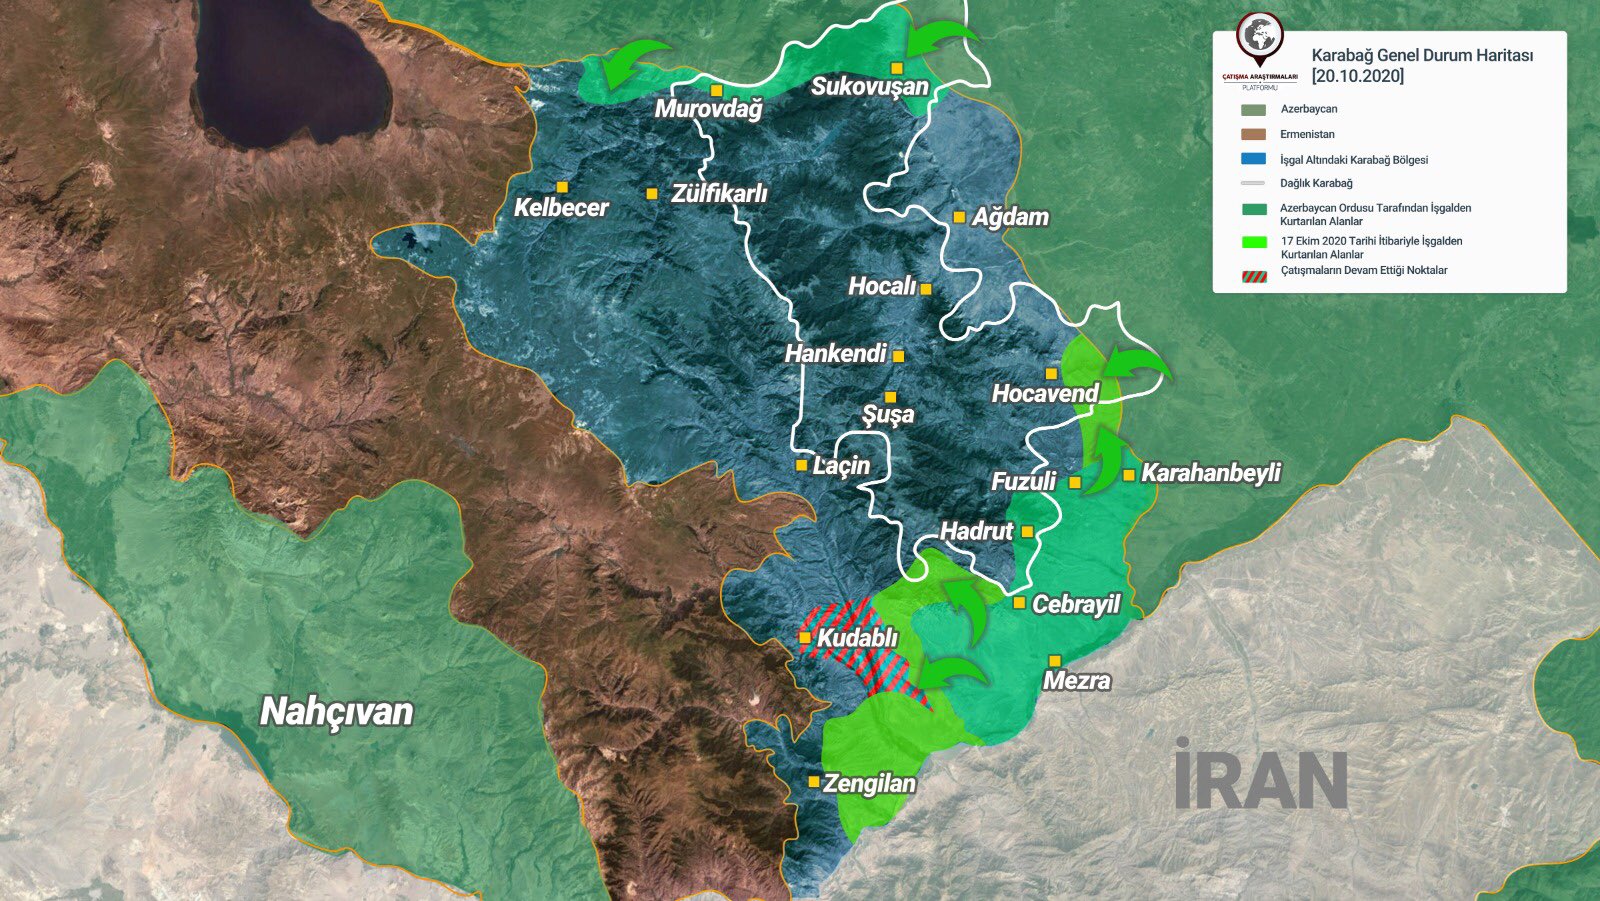 Güney Kafkasya’ya barış ve istikrar ancak Karabağ işgalden kurtulunca gelecektir